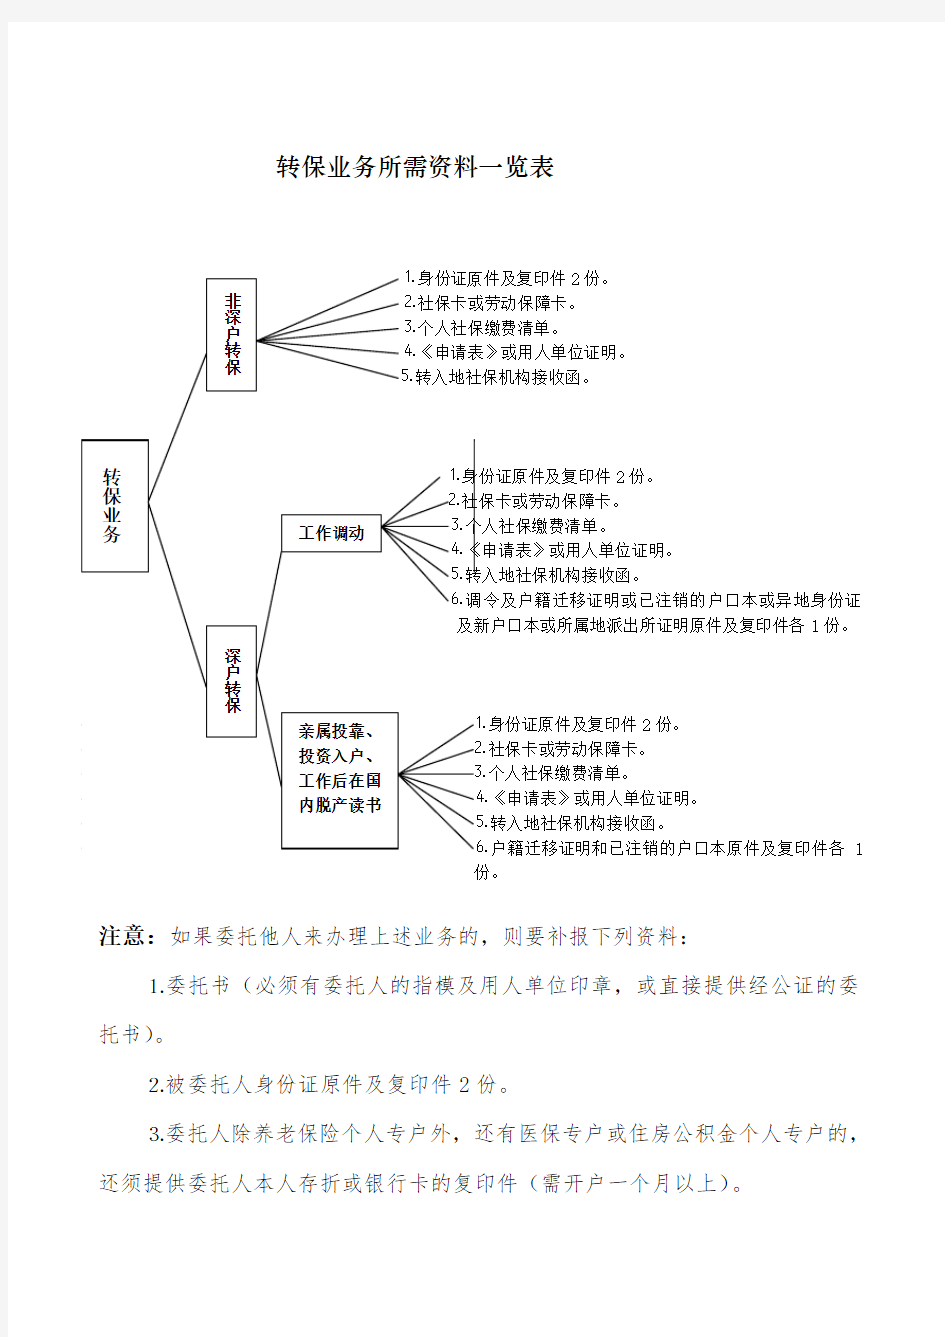 深圳社保个人办事流程图及所需资料表